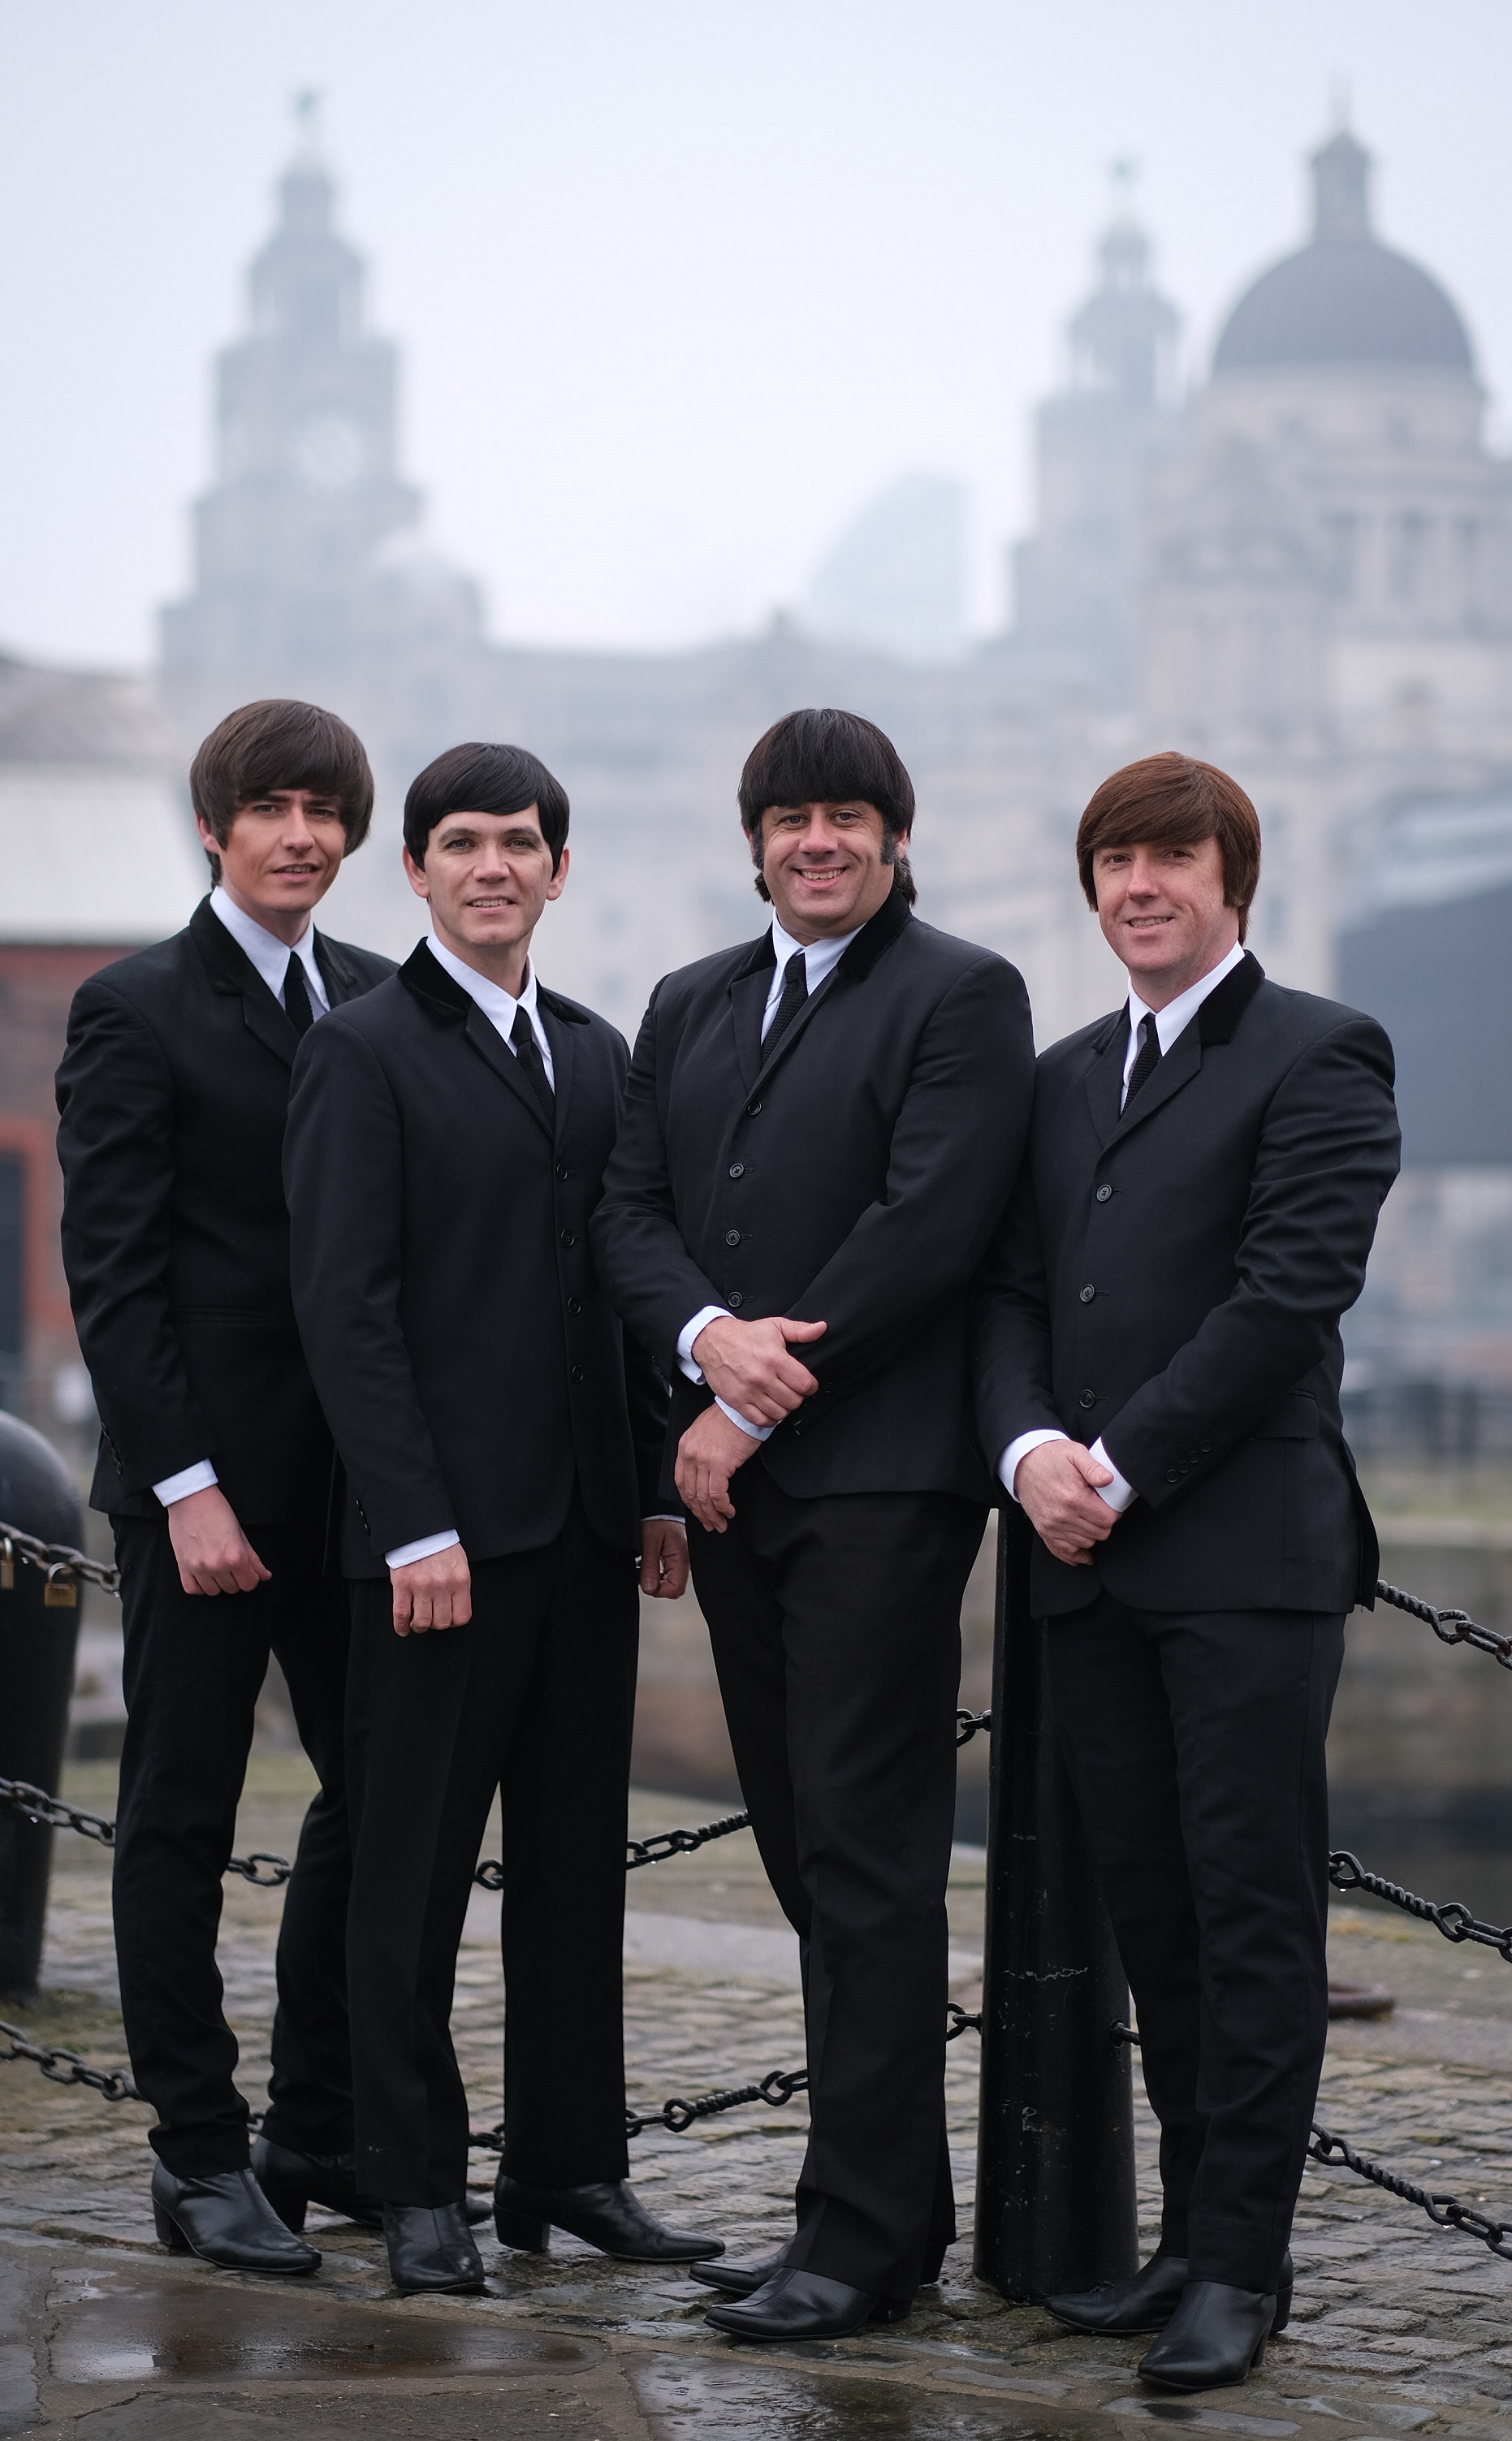 The Mersey Beatles 4 (1)